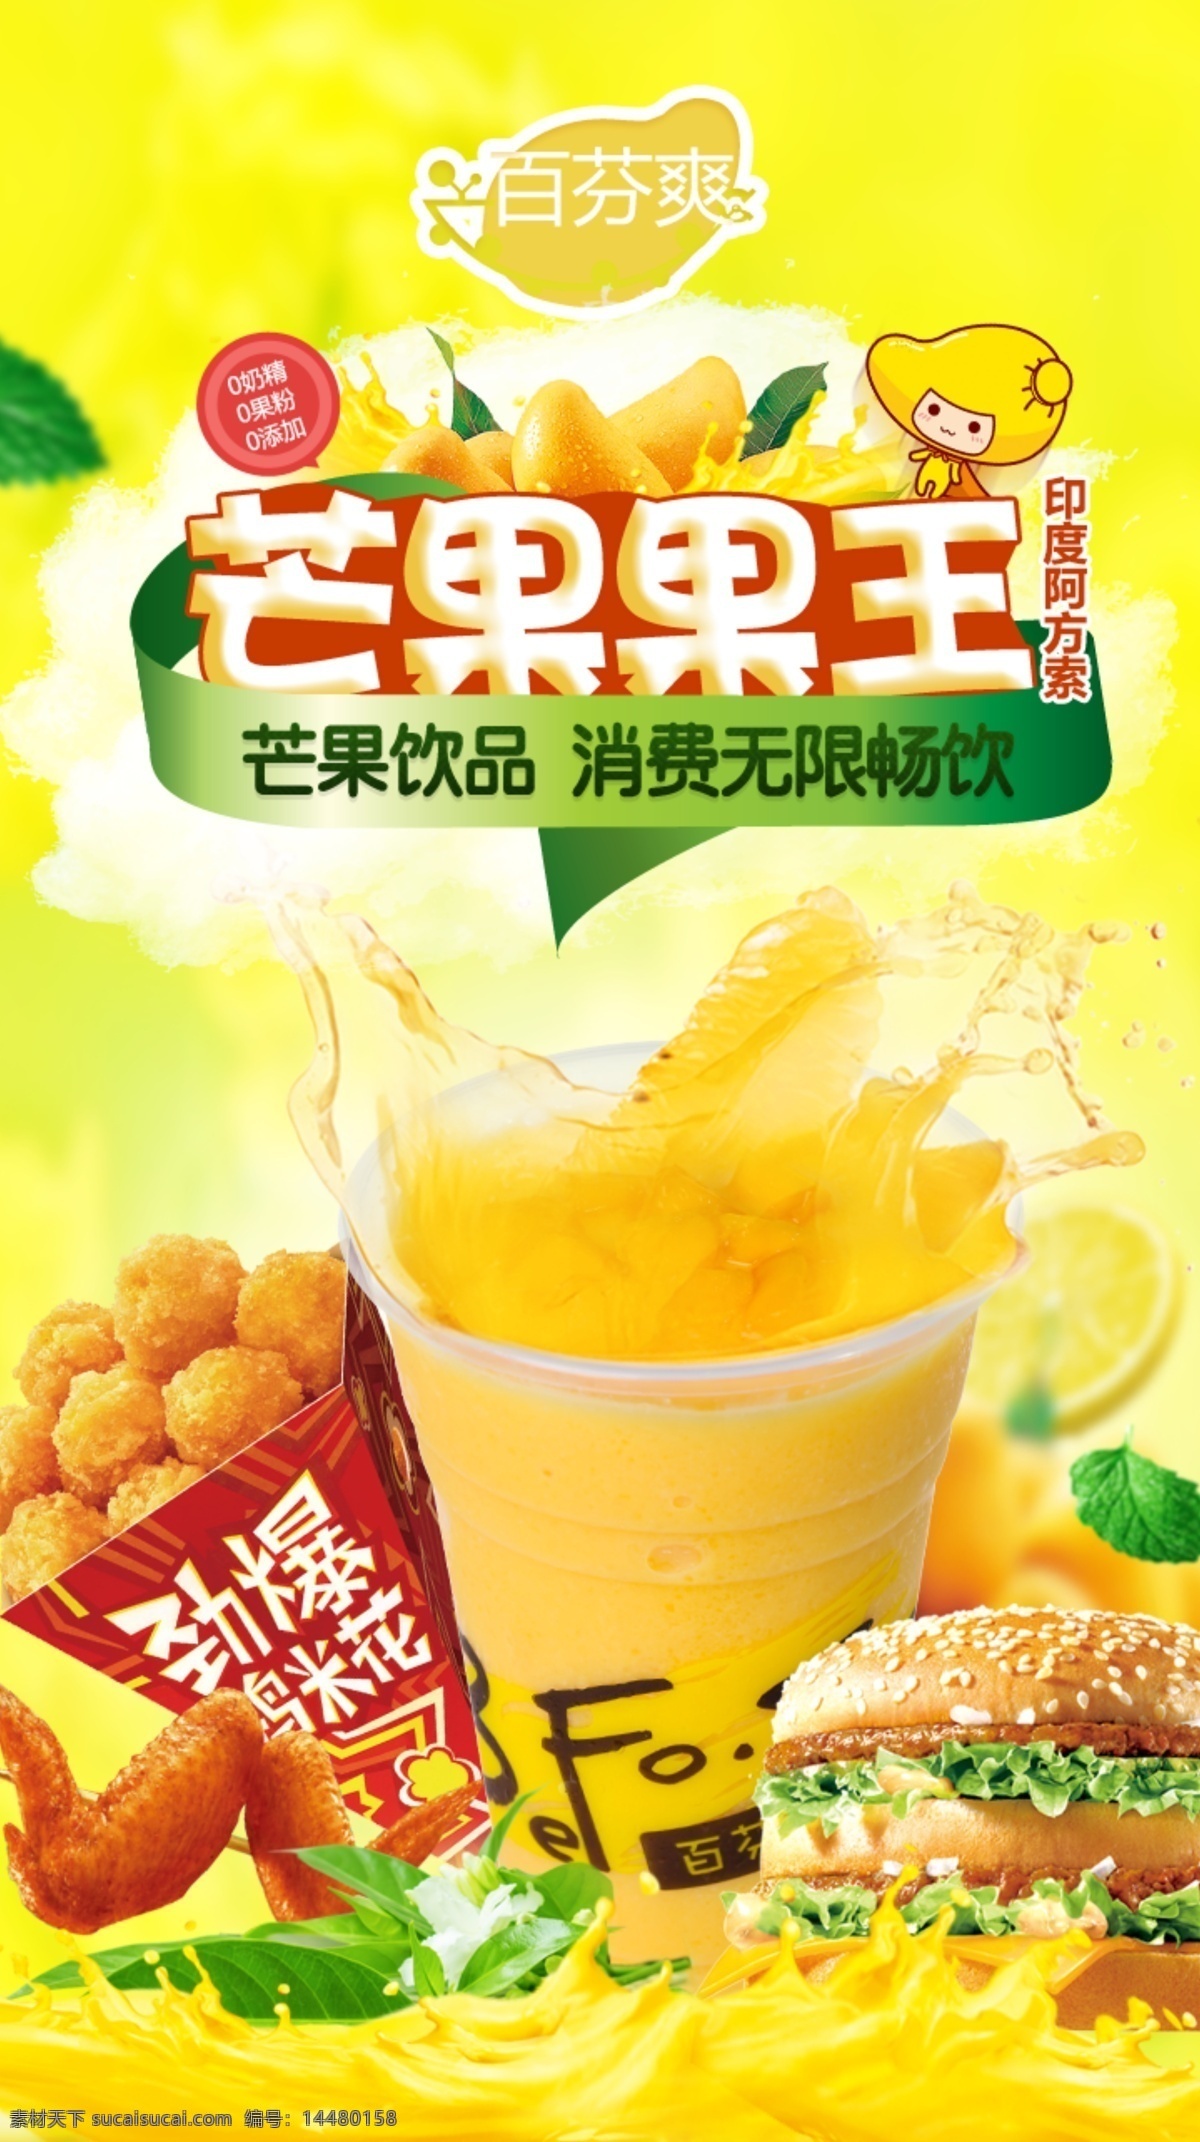 芒果 果王 饮料 海报 芒果果王 饮料图片 奶茶图片 广告